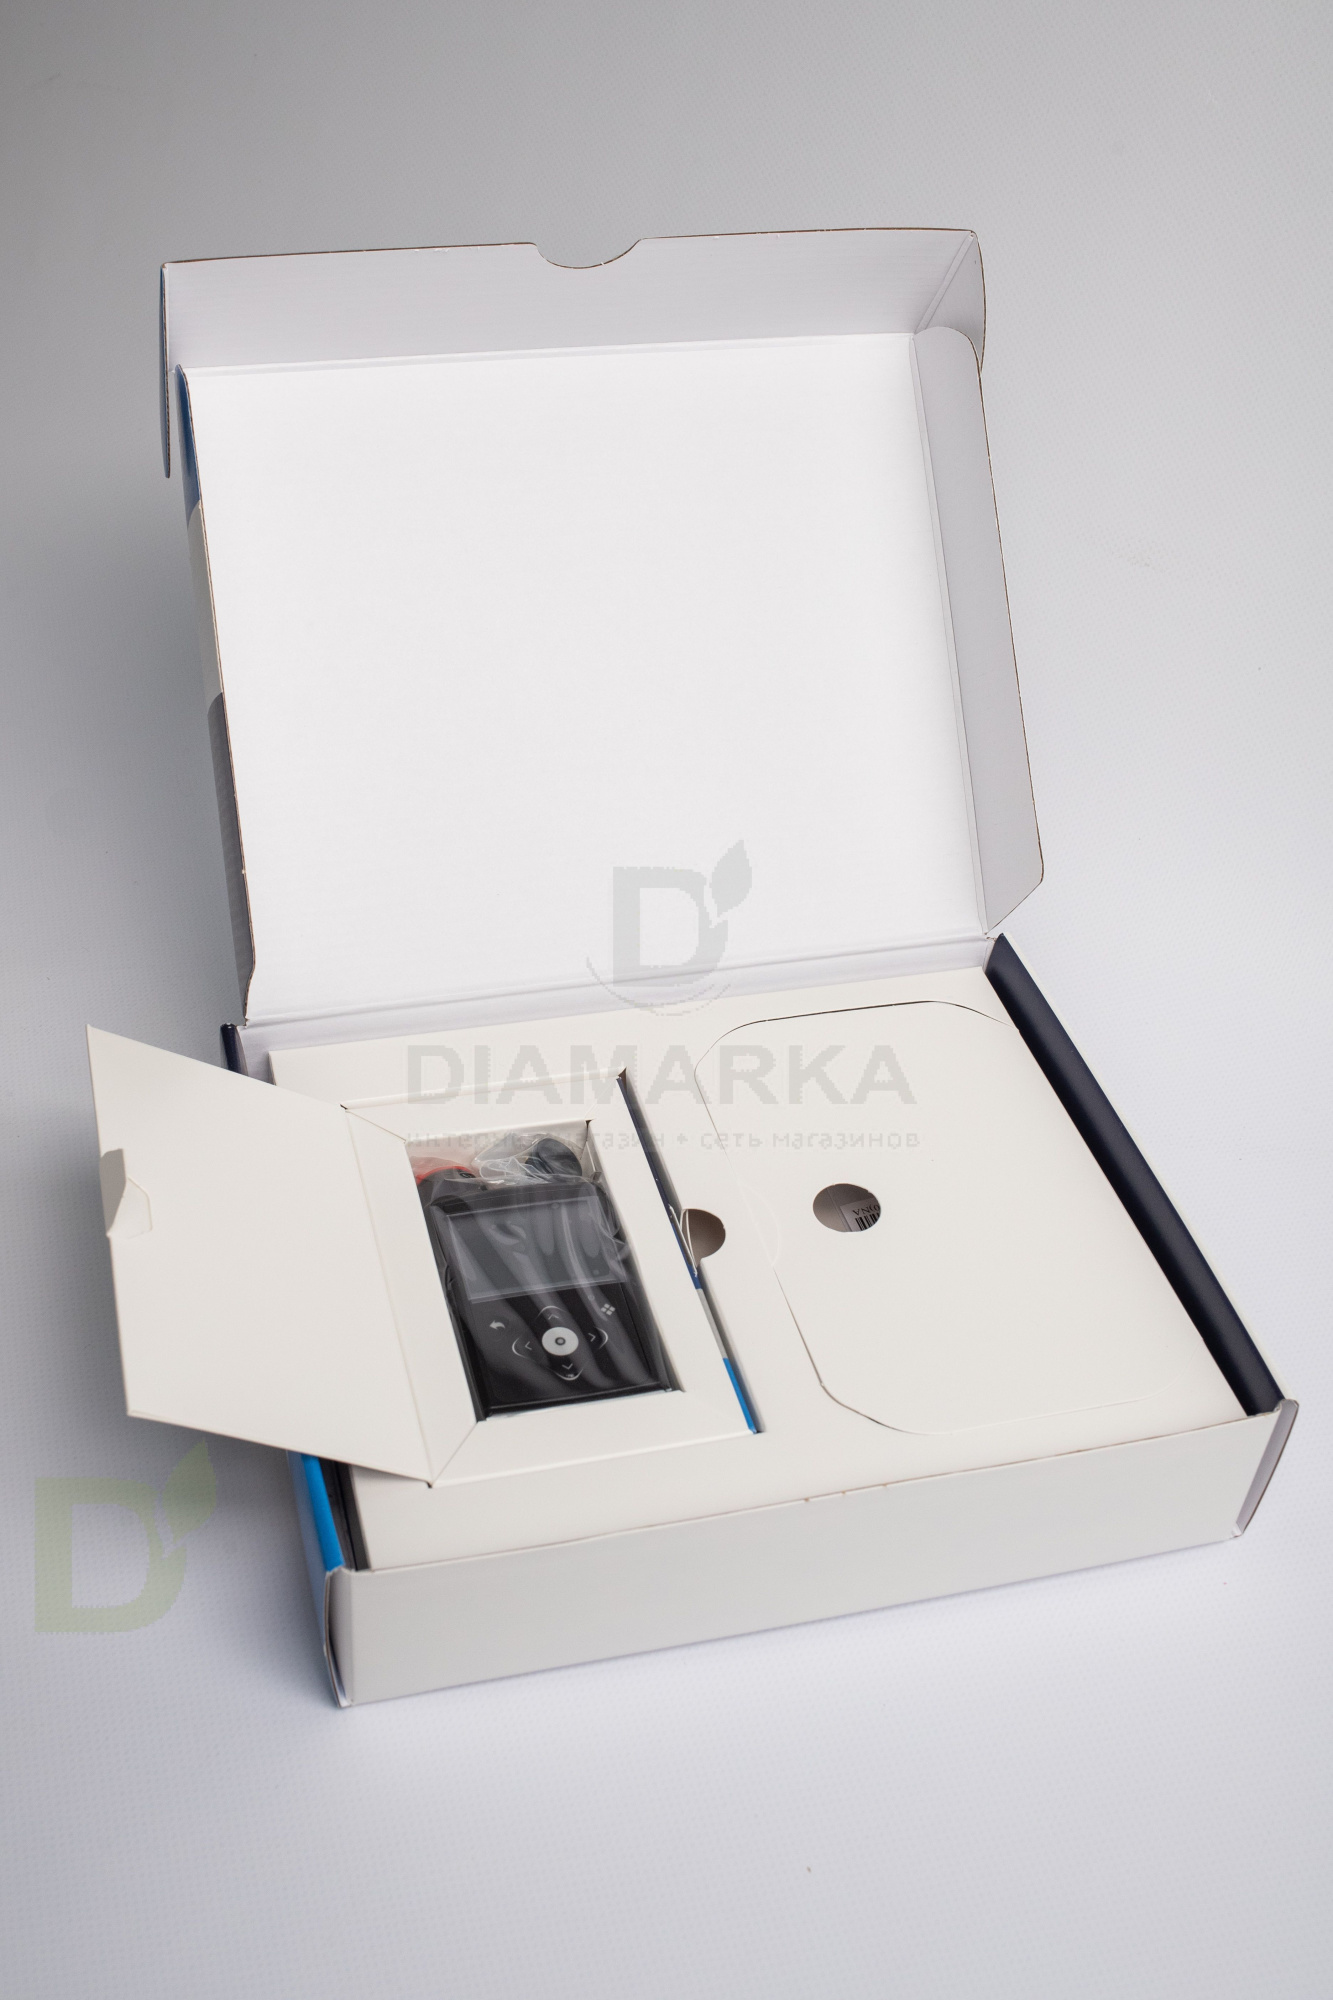 Инсулиновая помпа Medtronic MiniMed 740G с возможностью подключения смартфона, MMT-1861